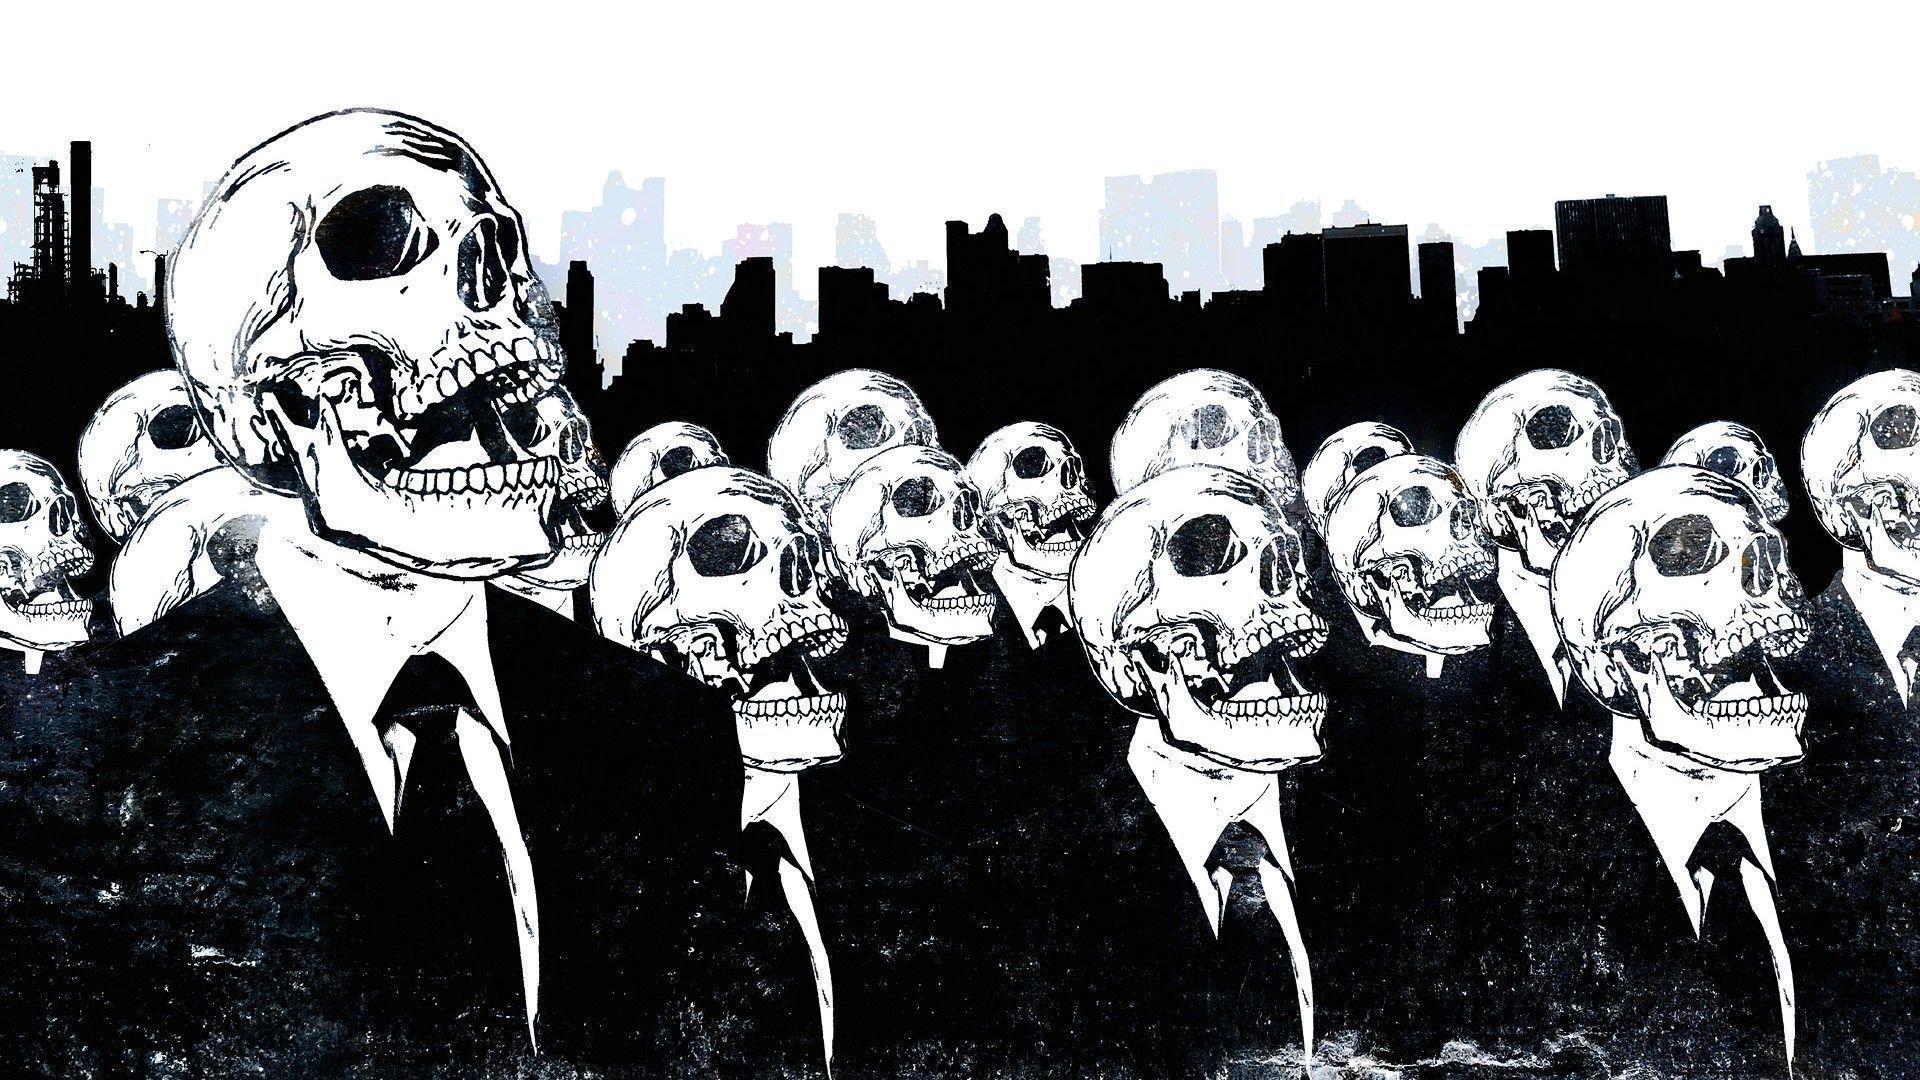 Skull Art Wallpaper Image & Picture